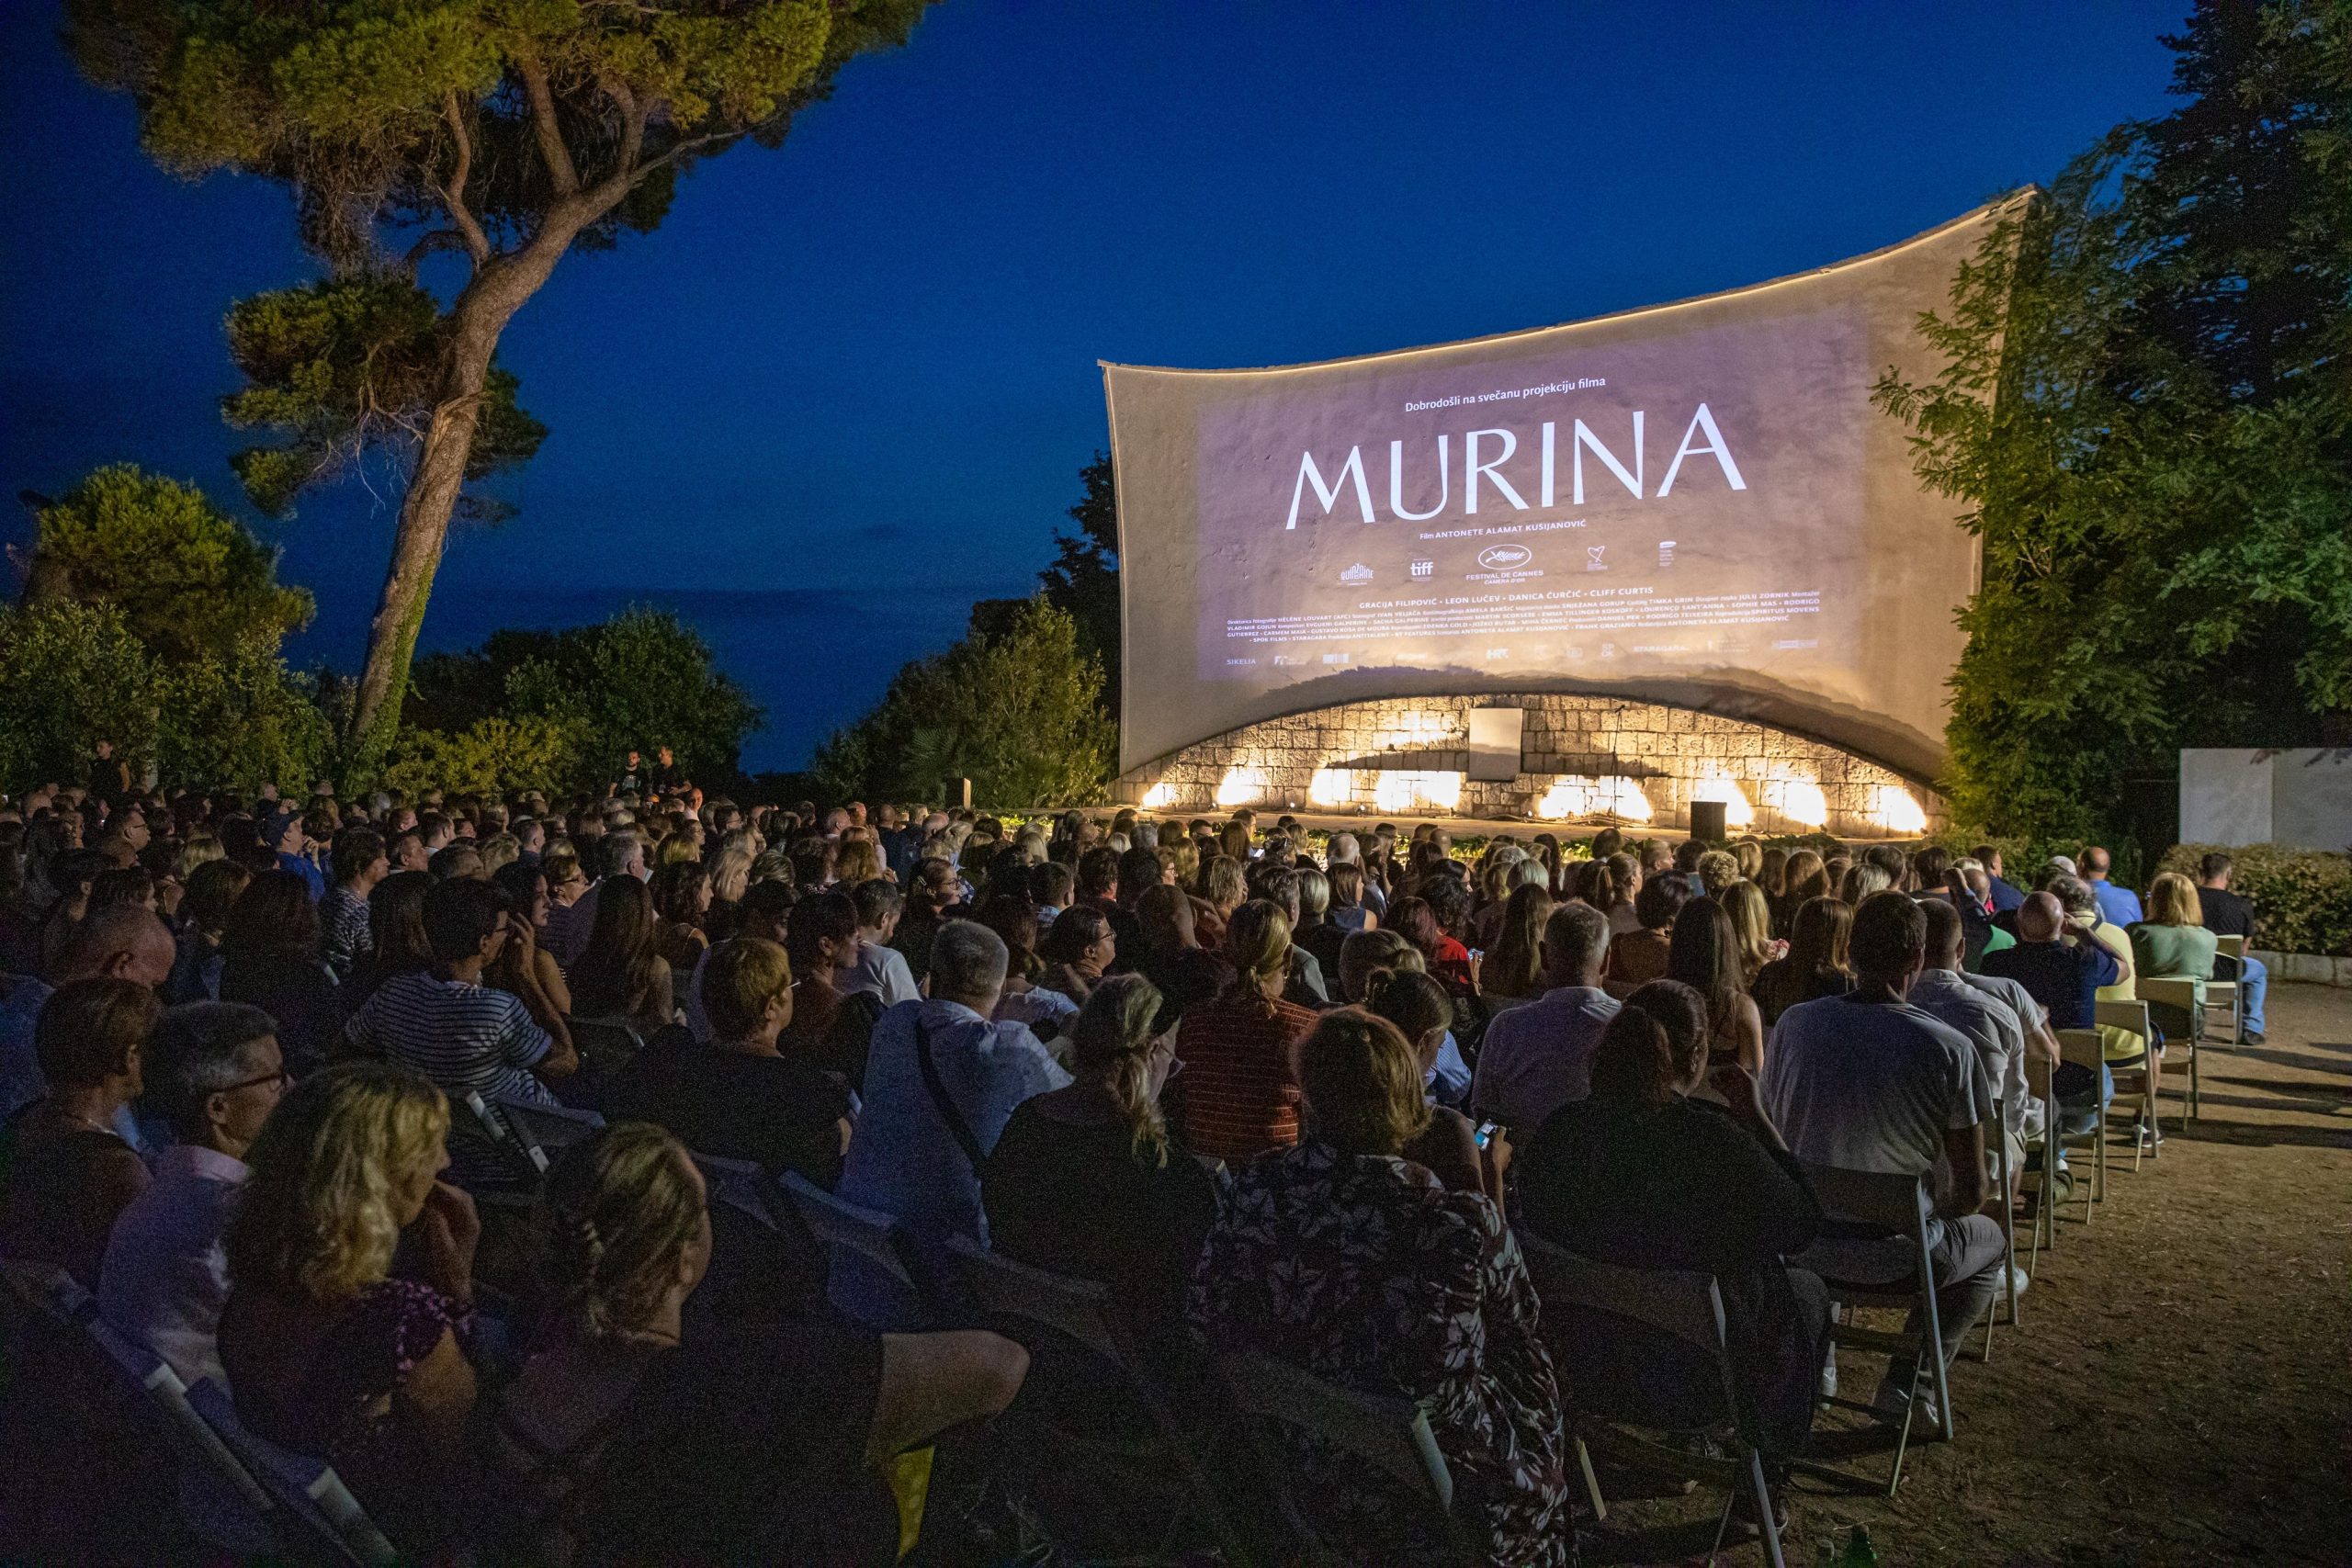 24.08.2021., Dubrovnik - Film "Murina", nagradjen u Cannesu Zlatnom kamerom (Camera d’Or), veceras je prikazan u ljetnom kinu Slavica. Photo: Grgo Jelavic/PIXSELL